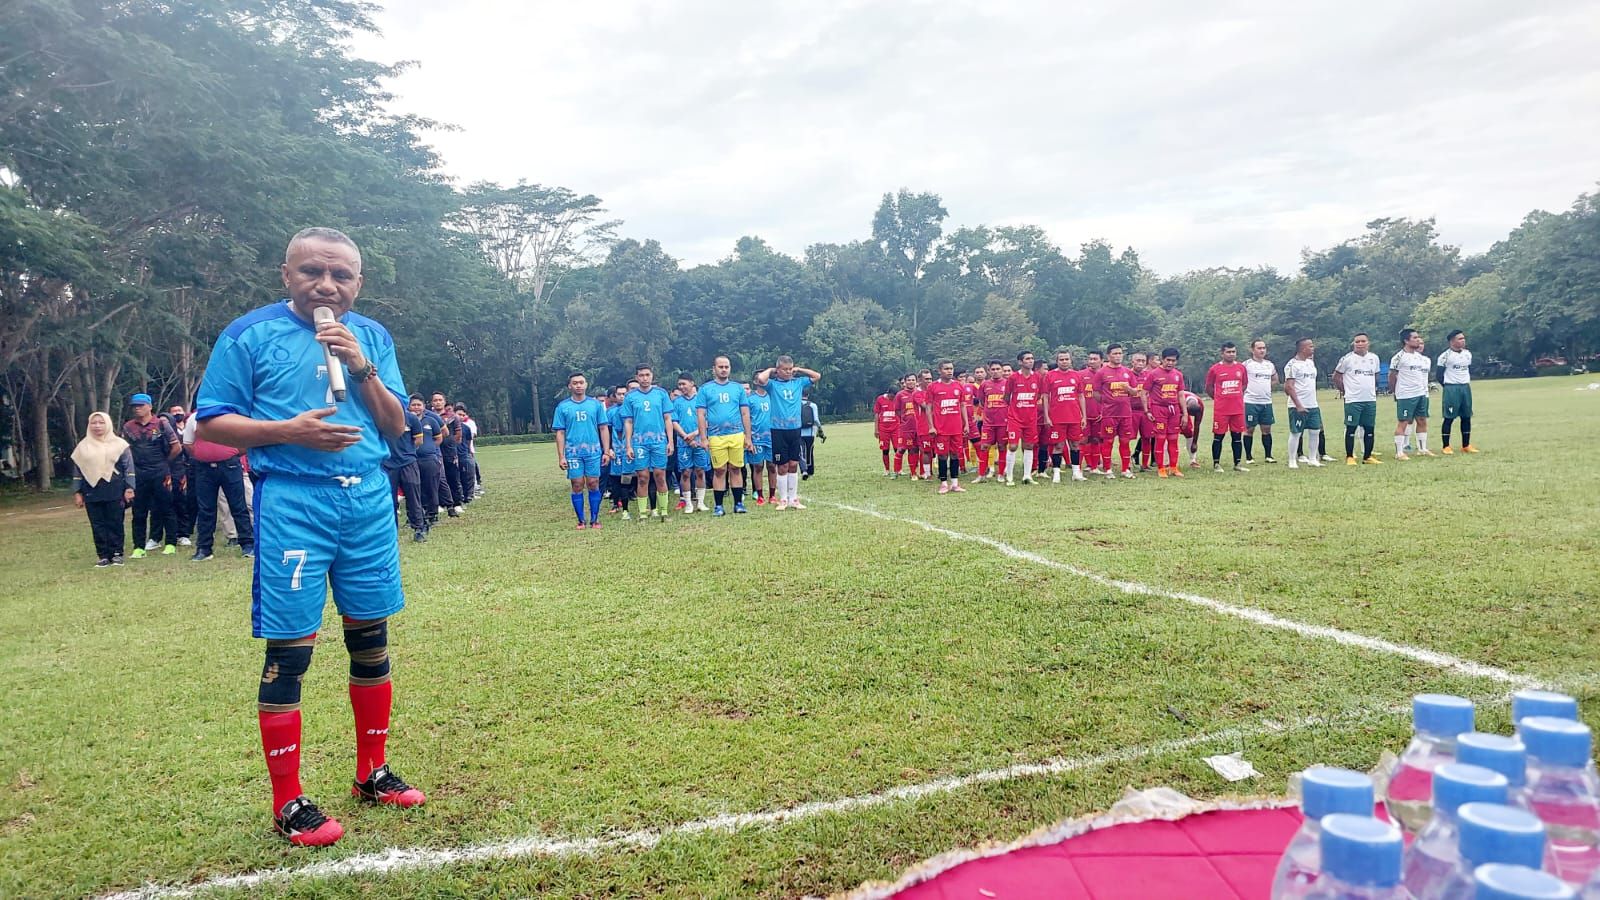 Kantor Wilayah Kementerian Hukum dan HAM (Kanwil Kemenkumham) Provinsi Sulawesi Tenggara (Sultra), memperingati Hari Bakti Pemasyarakatan ke-59 lewat perhelatan pekan olahraga dan ekshibisi sepak bola, Sabtu, 11 Maret 2023.